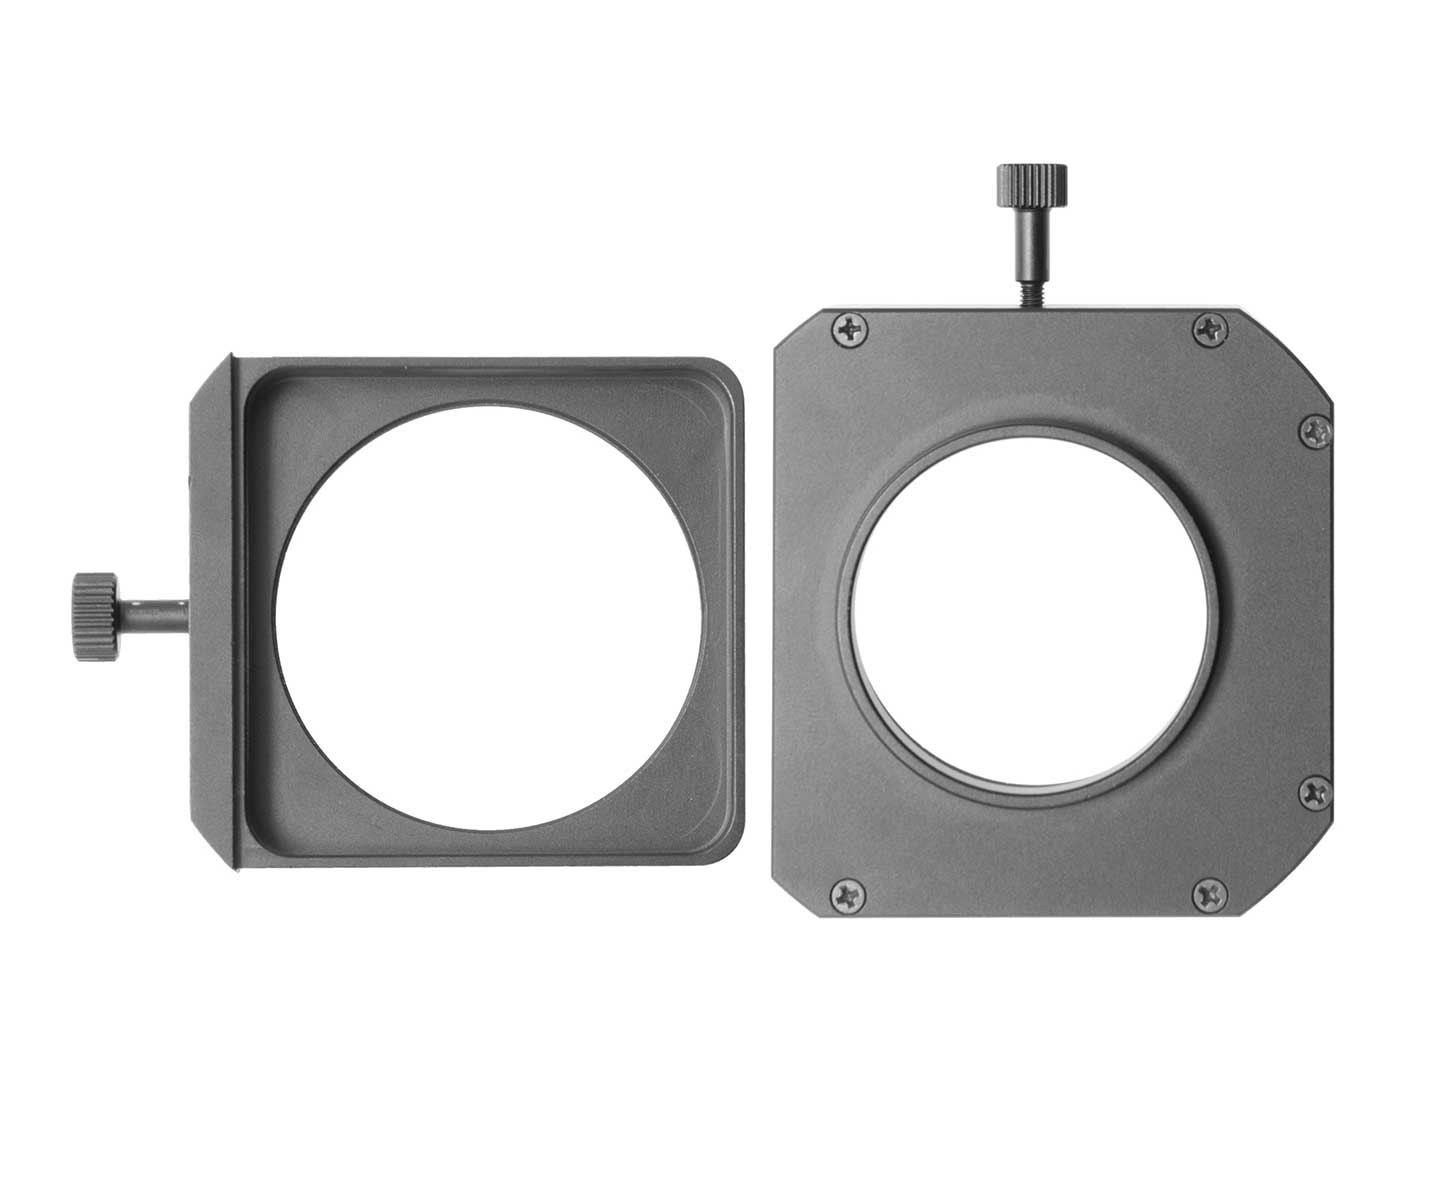    TS-Optics T2 Filter Changer - strengthened Design  [EN]  